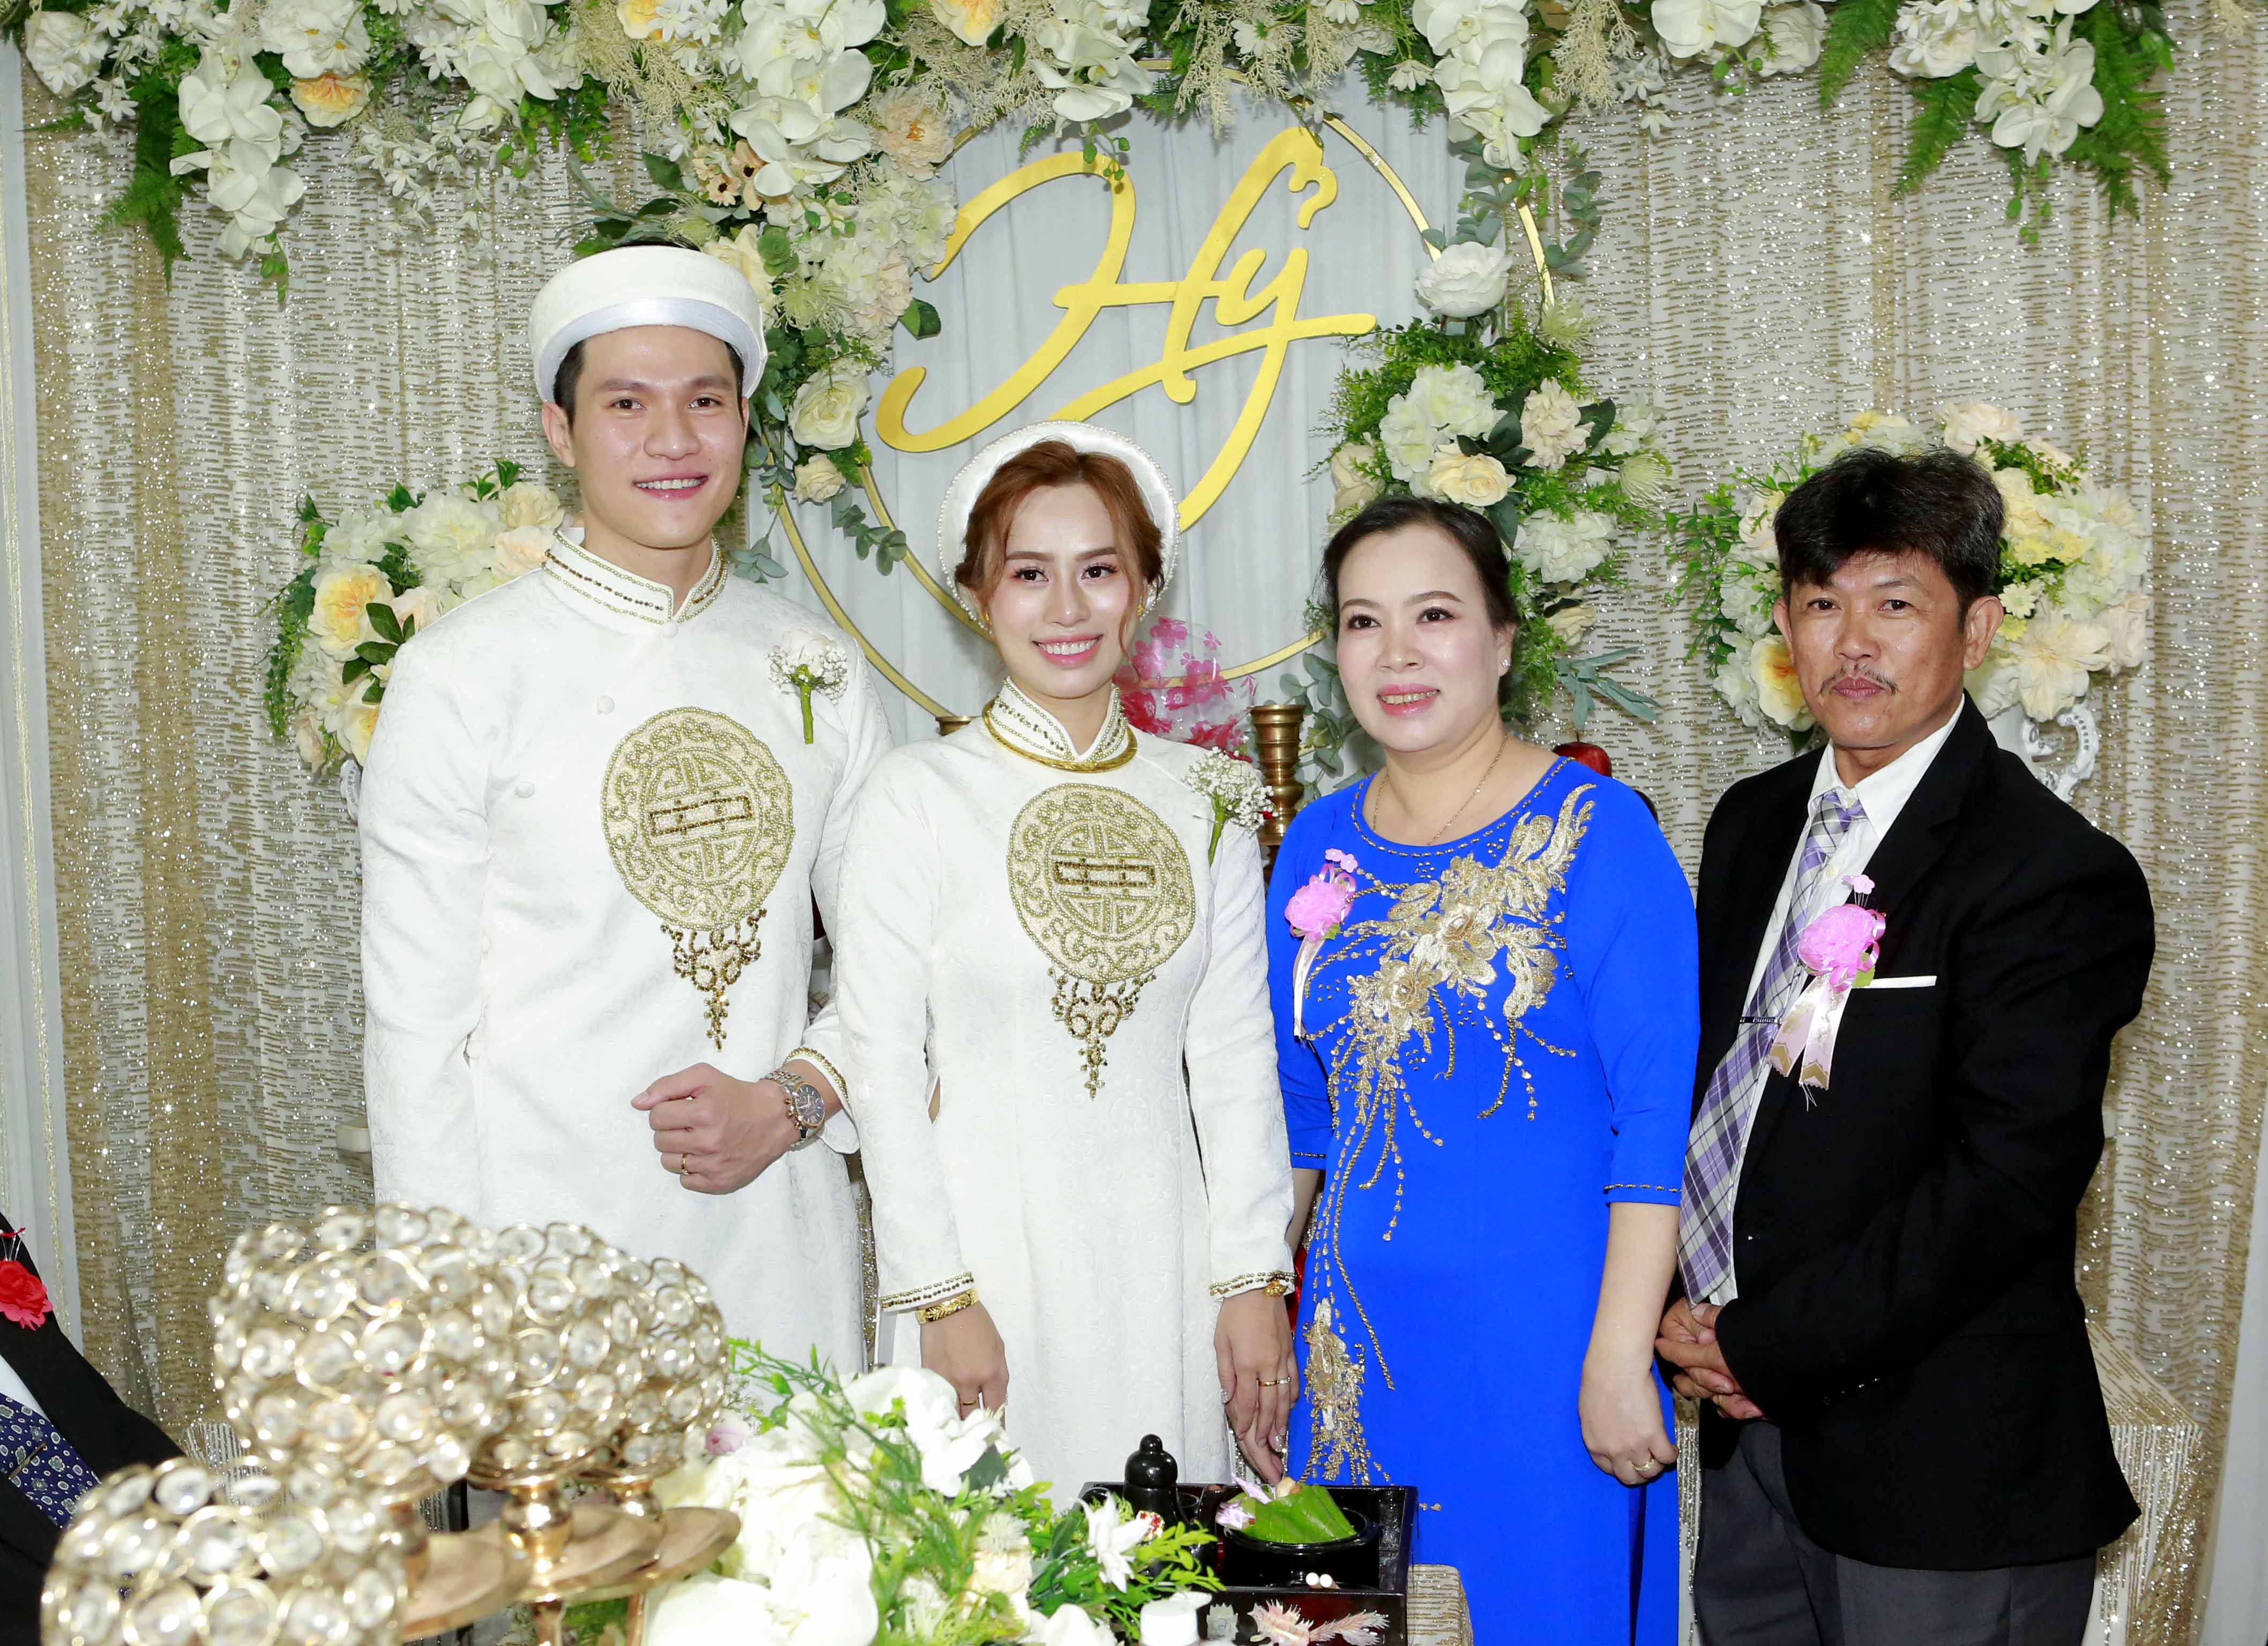 Ngày 3.1, diễn viên Minh Anh kết thúc cuộc sống độc thân khi tổ chức đám cưới tại quê vợ 9x ở Kiên Giang. Đến hôm nay, Minh Anh mới cởi mở chia sẻ các hình ảnh.&nbsp;